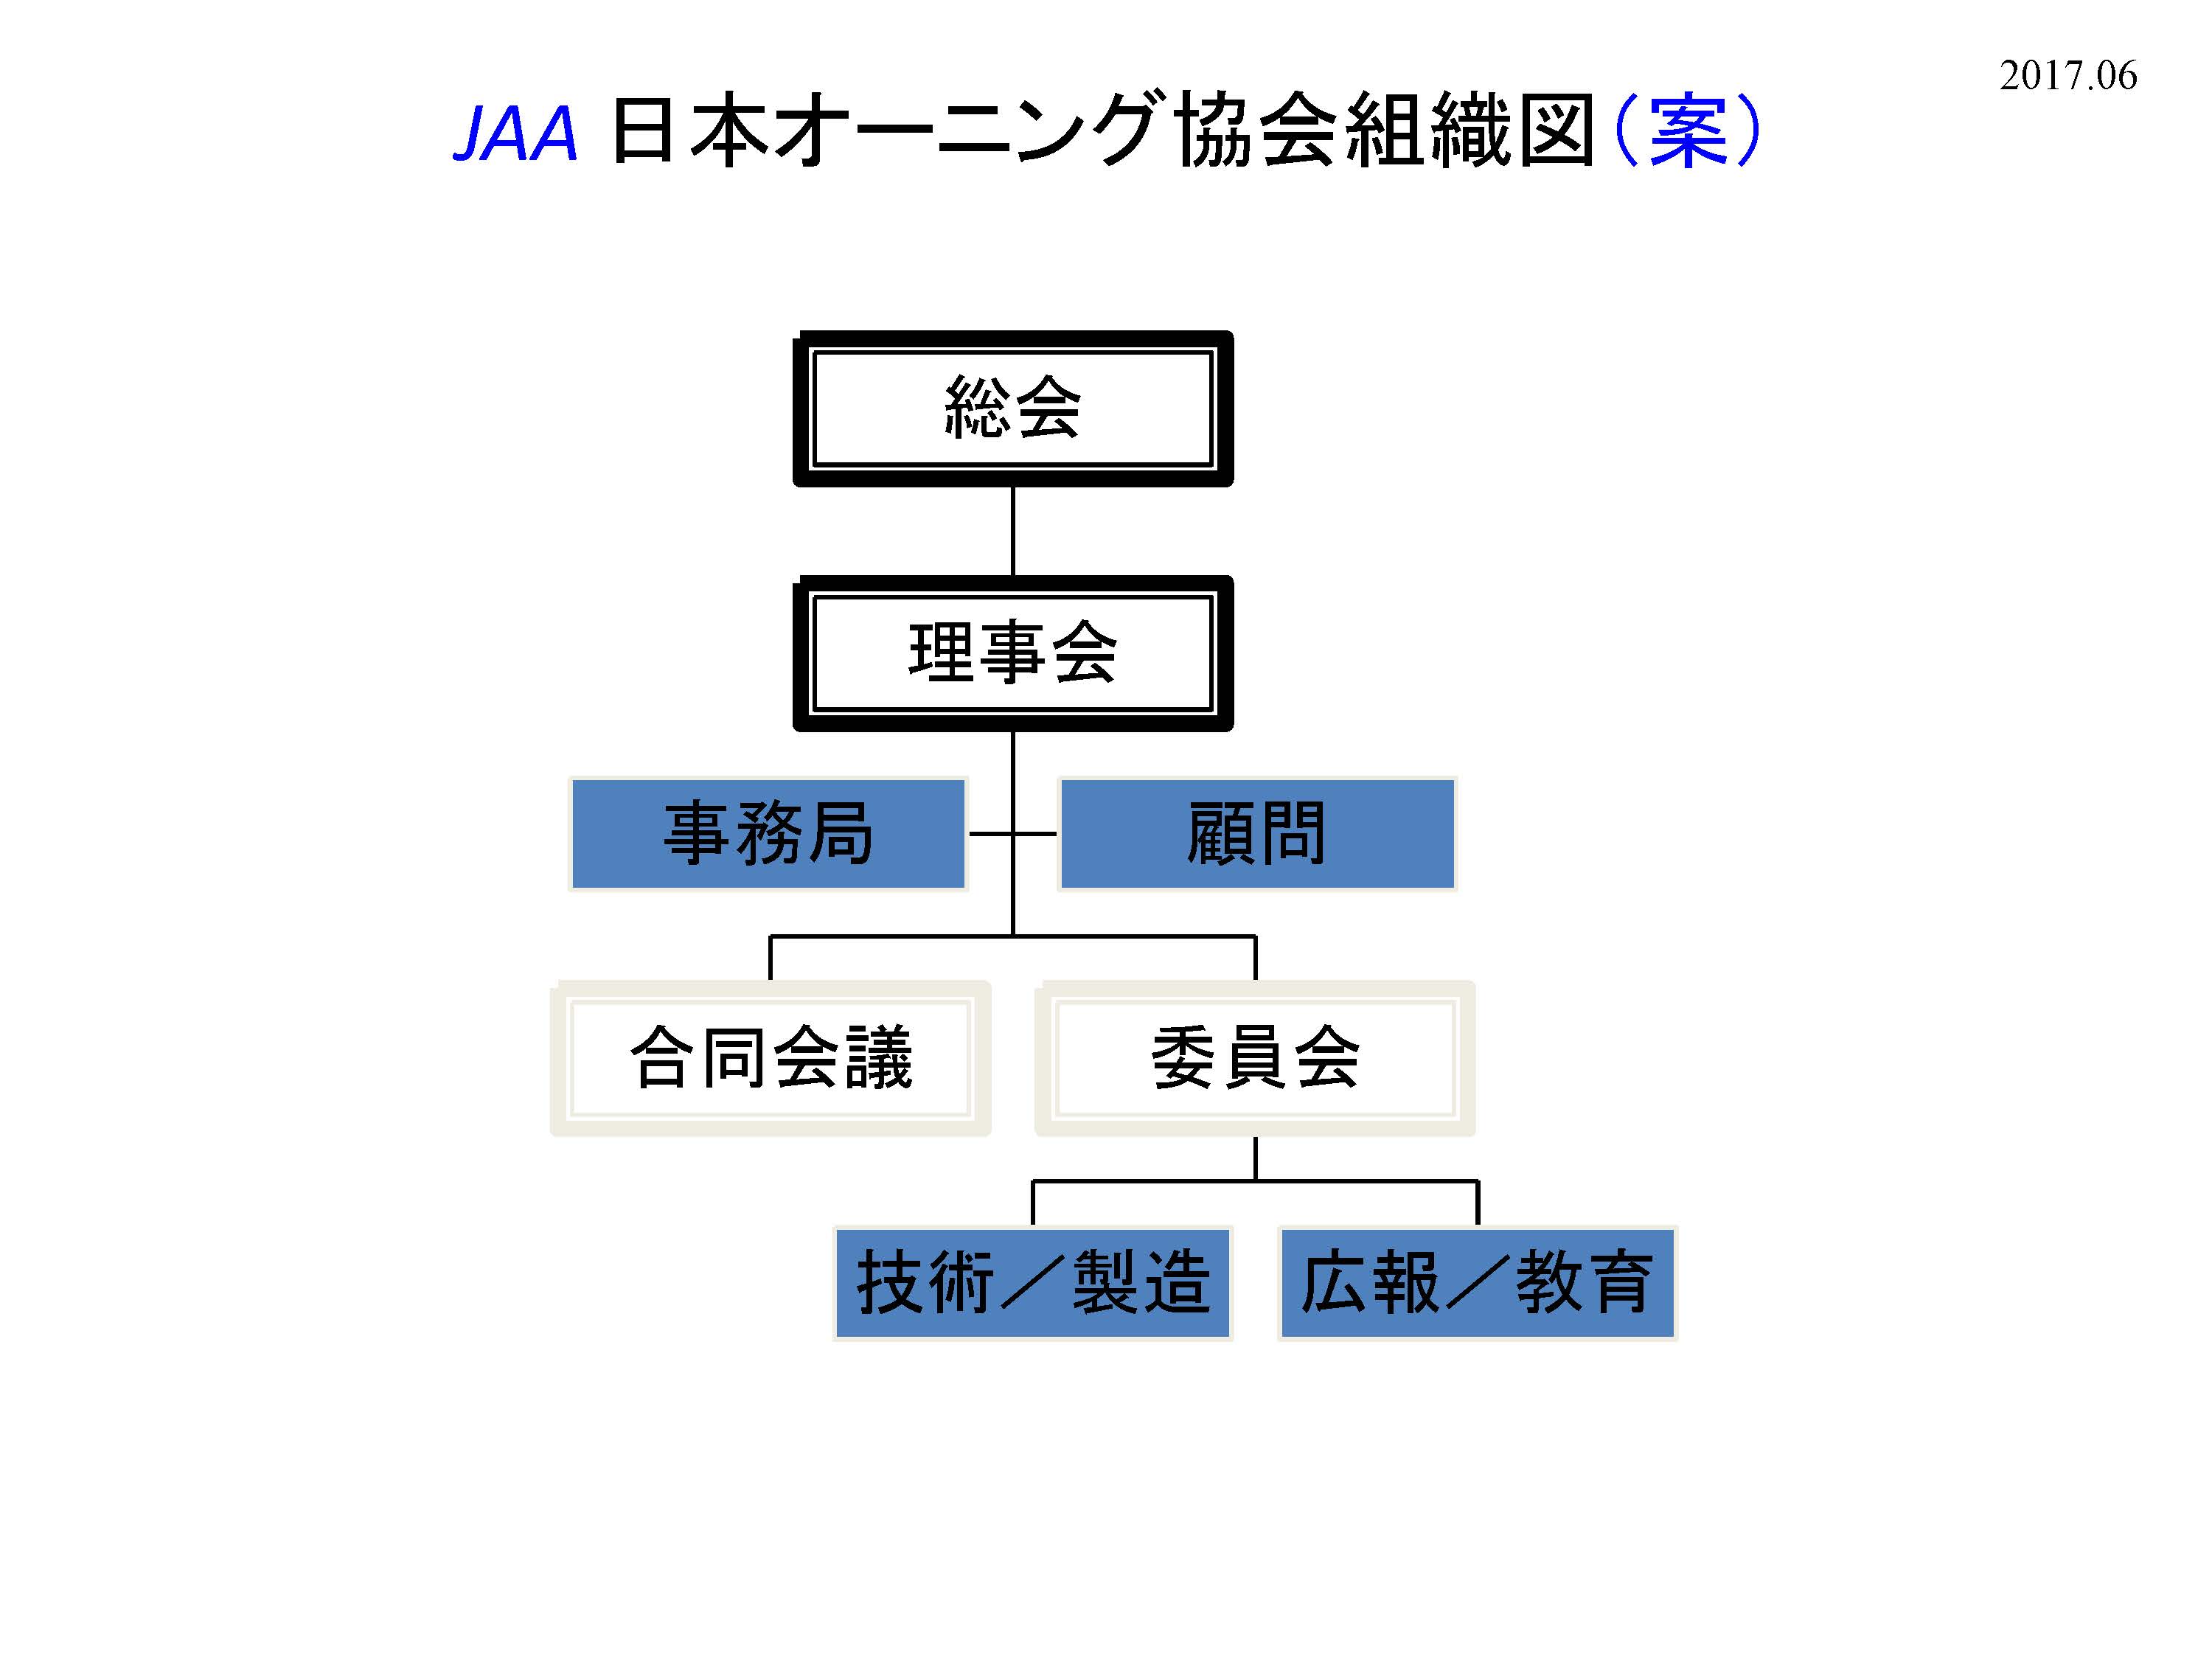 JAA新組織図の詳細